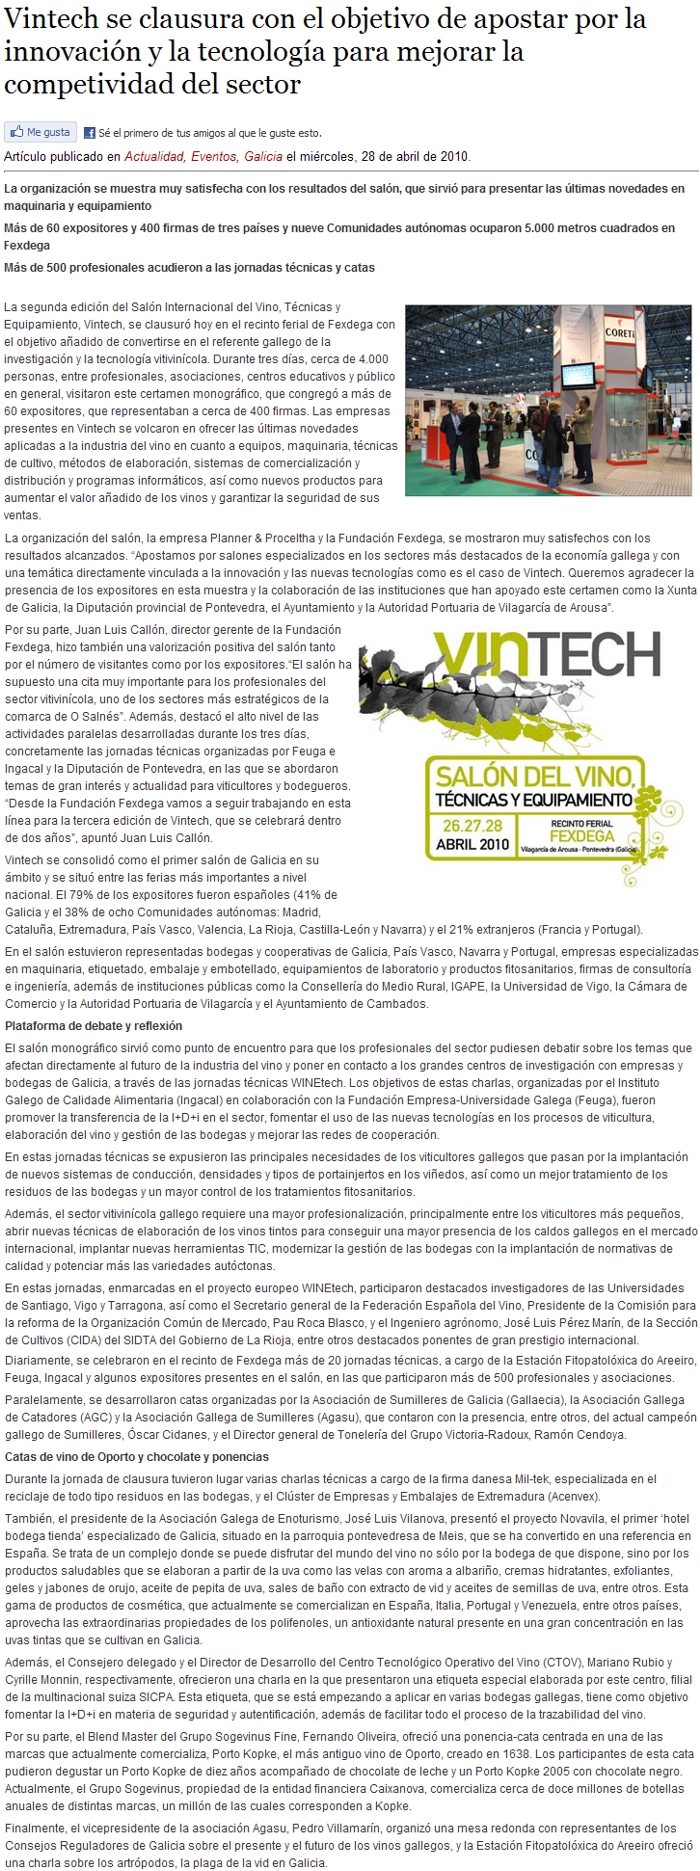 Vintech se clausura con el objetivo de apostar por la innovacin y la tecnologa para mejorar la competividad del sector